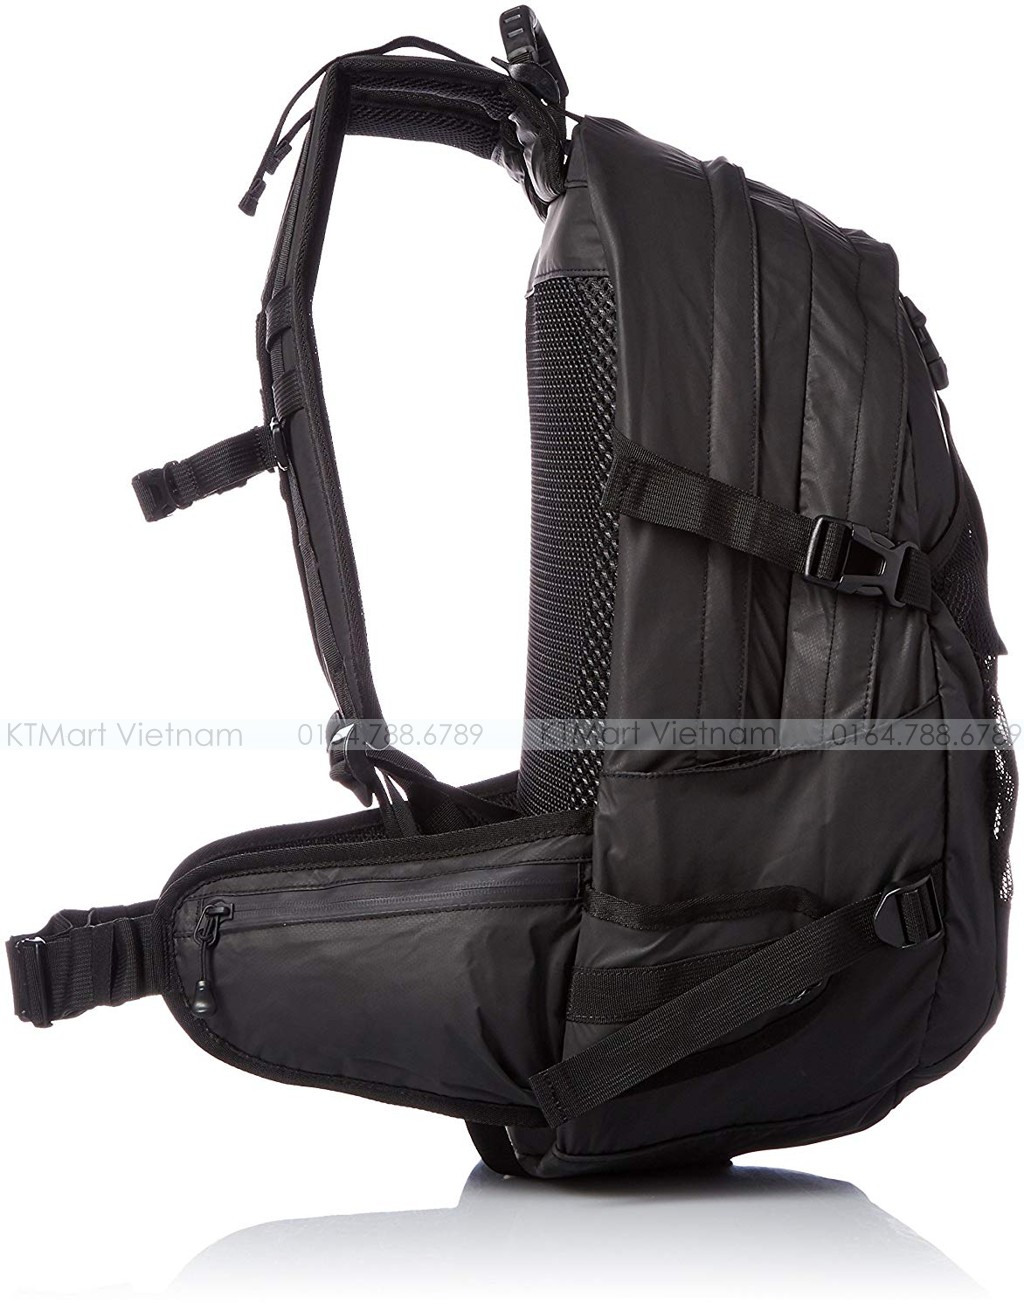 Snowpeak Active Backpack Type02 ONE Black UG-672BK Snowpeak ktmart.vn 11